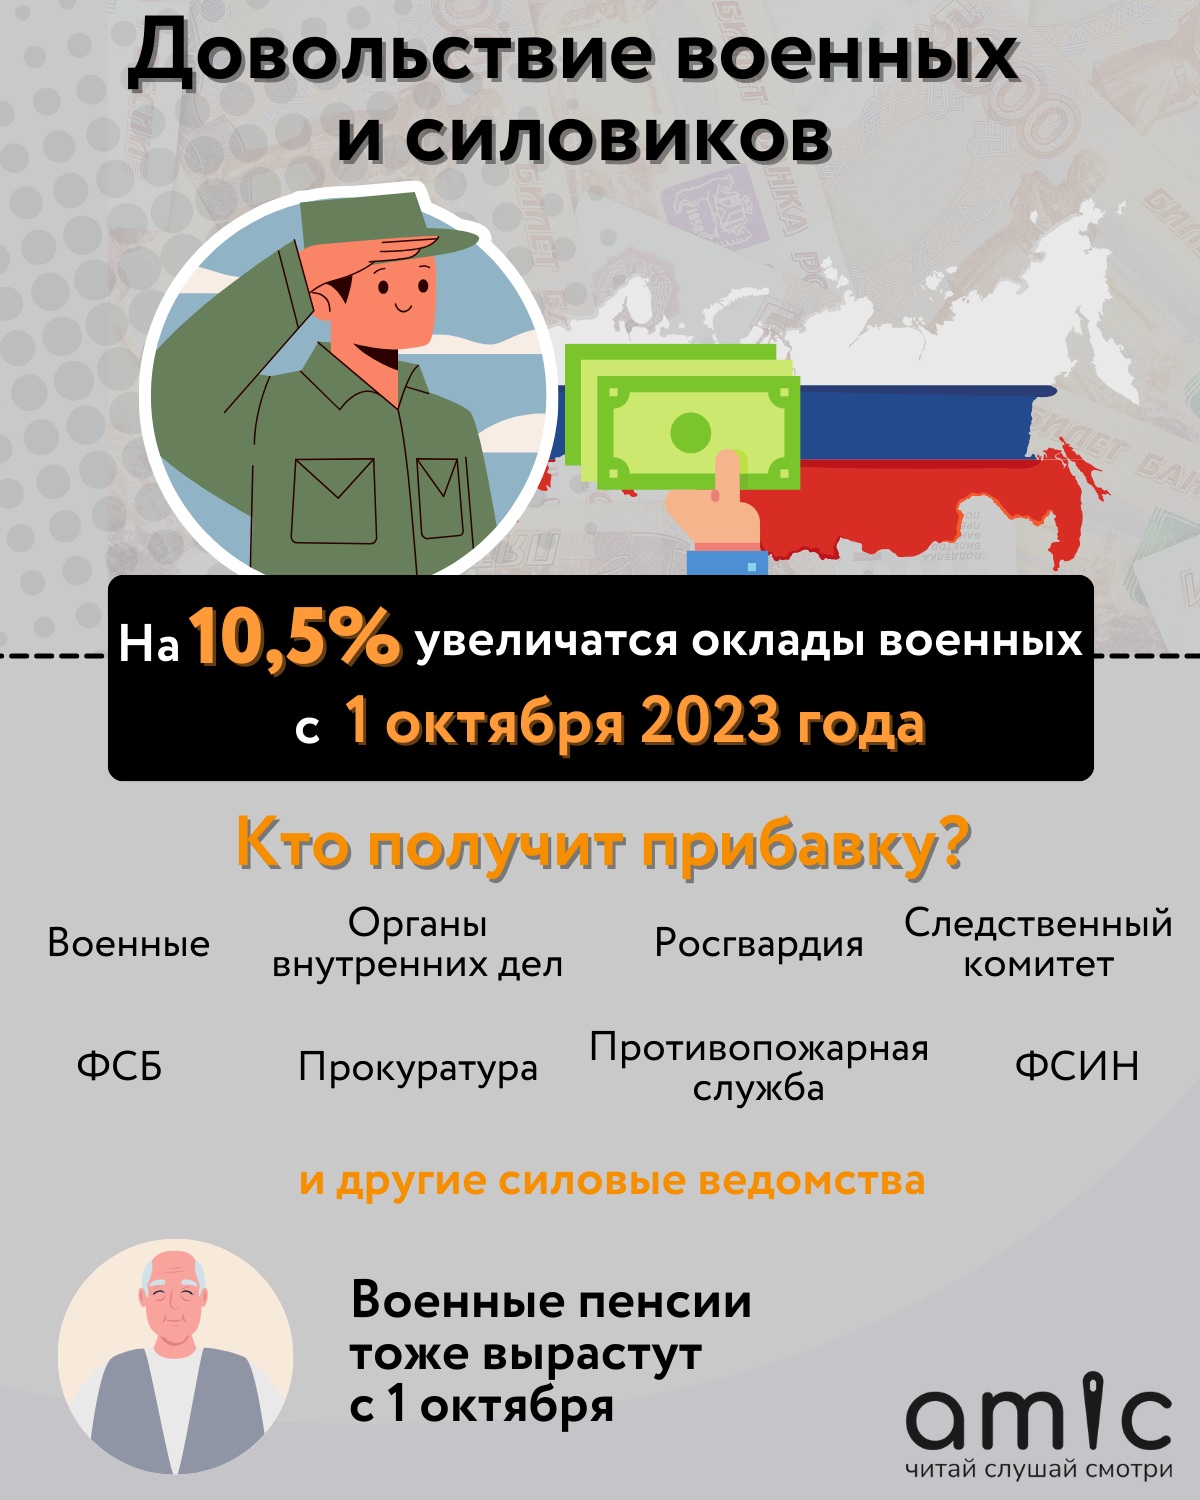 Какие законы вступили в силу в России с 1 октября 2023 года?